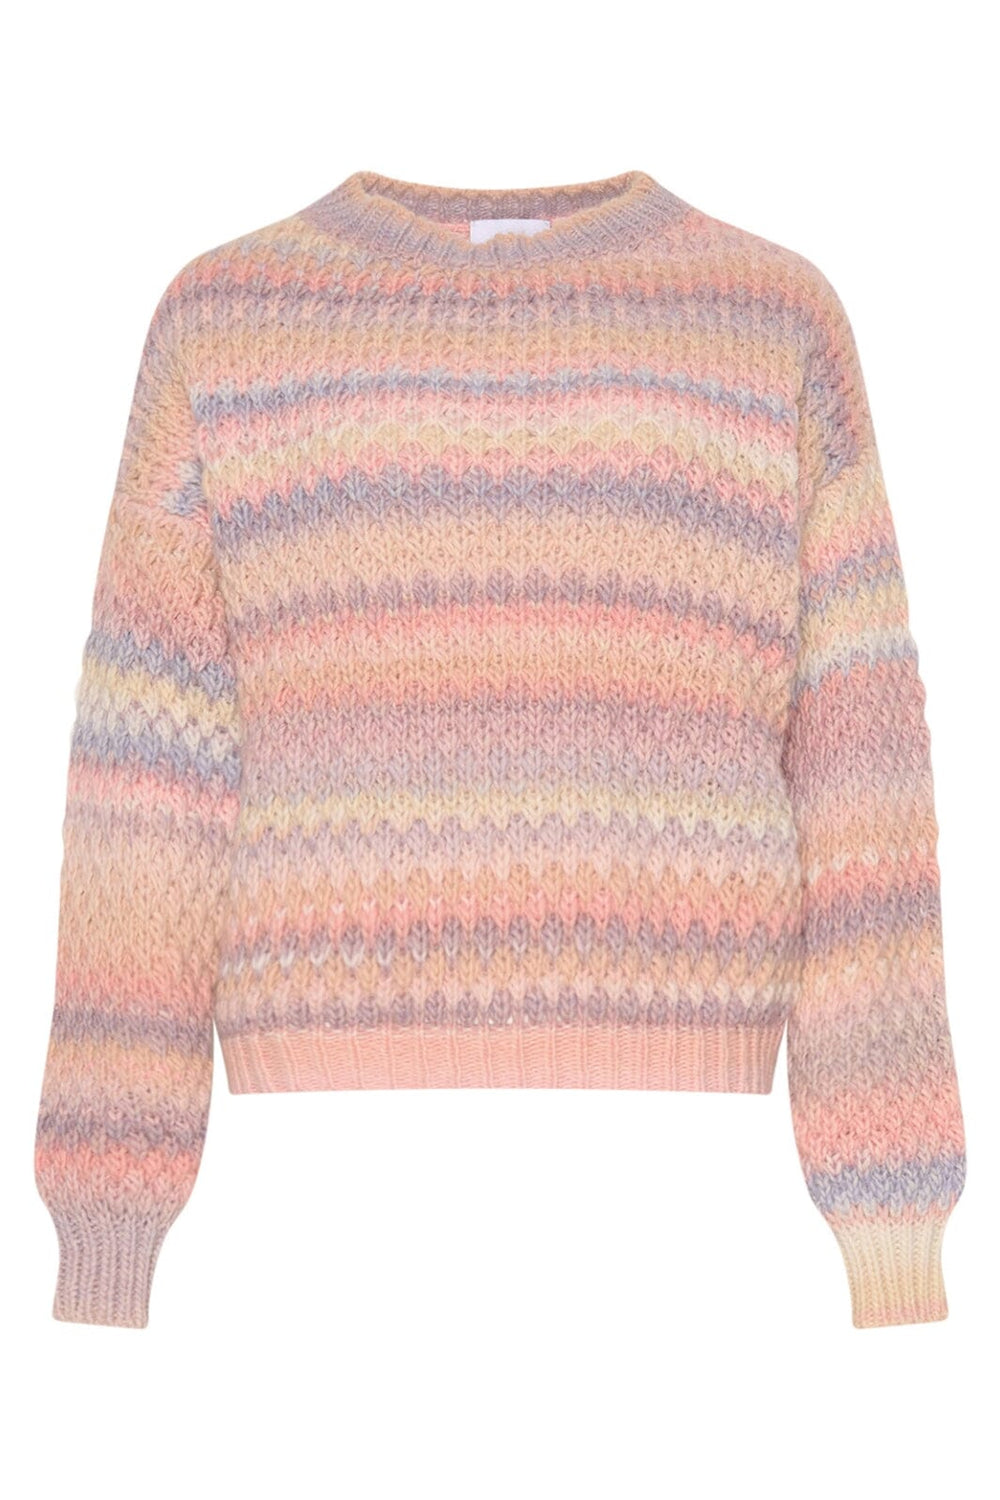 Noella - Gio Sweater - 830 Pastel Mix Strikbluser 